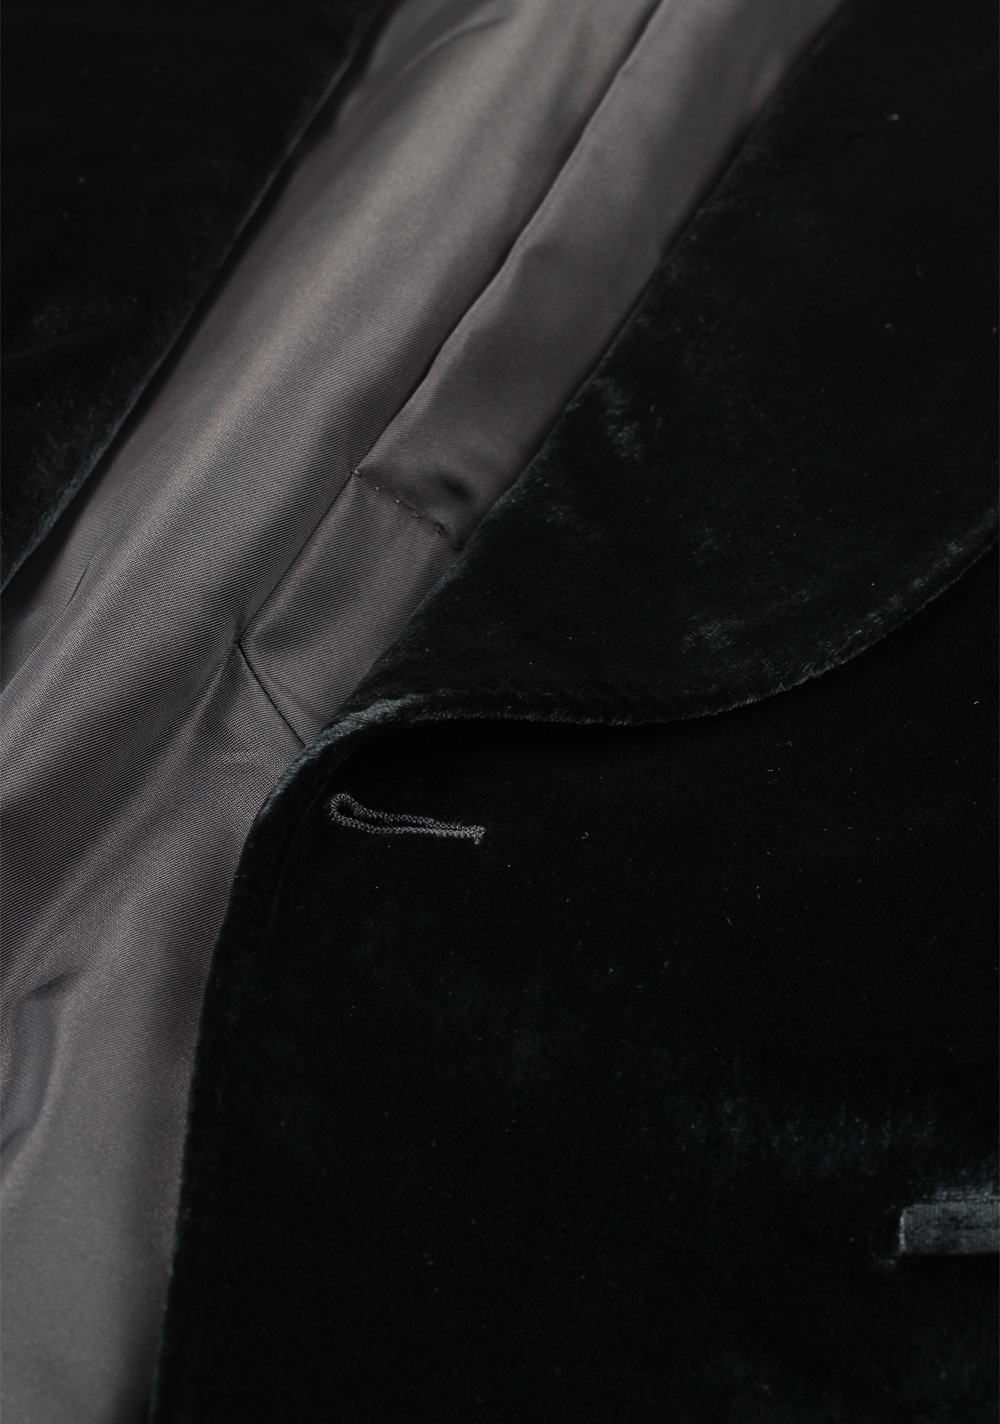 TOM FORD Shelton Black Velvet Tuxedo Dinner Jacket Size Size 48 / 38R U.S. | Costume Limité